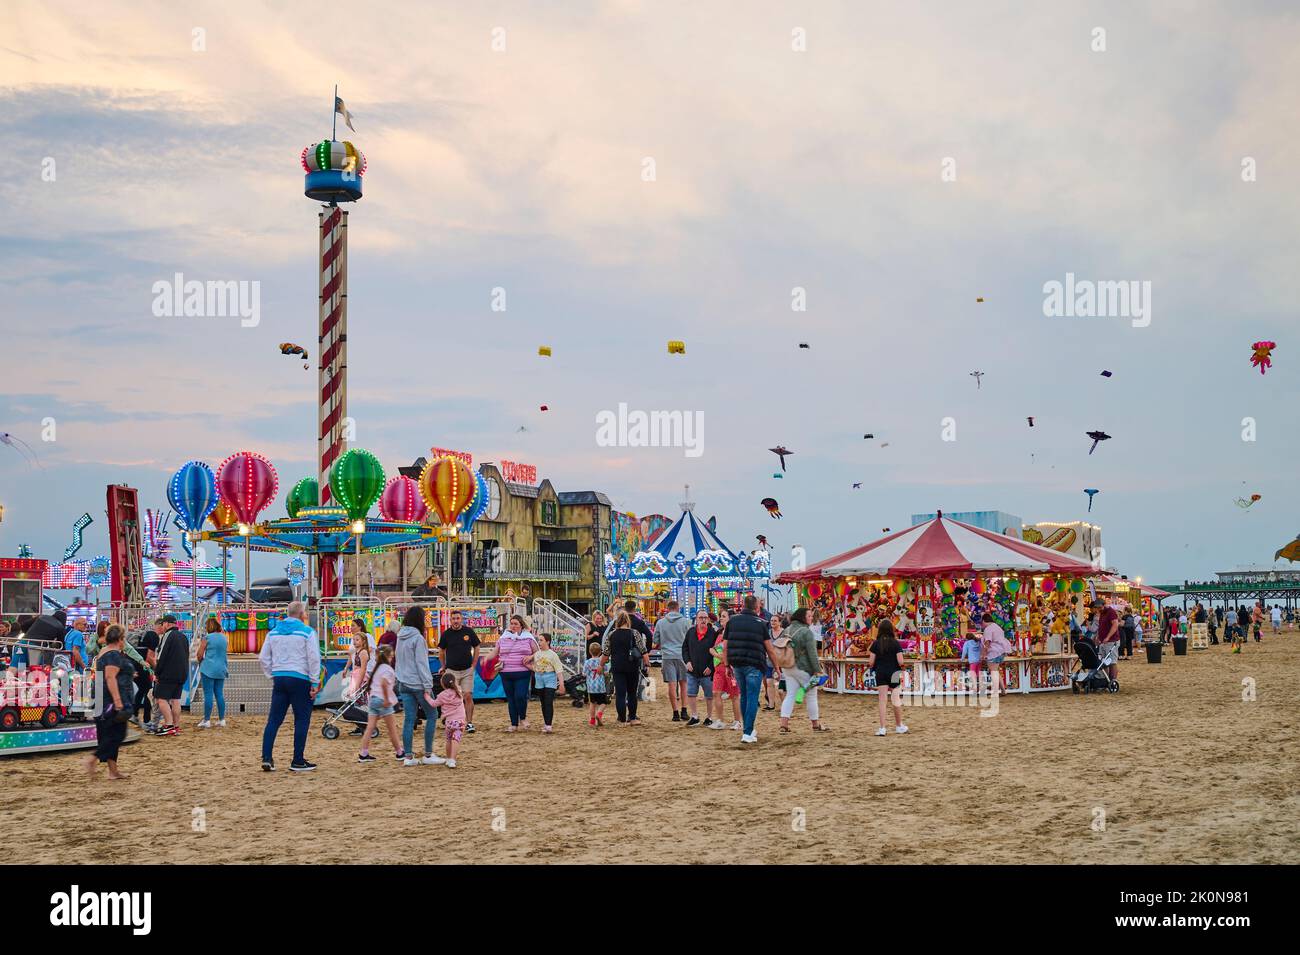 St Annes International kite festival held on the beach in September. Kites flying at dusk Stock Photo